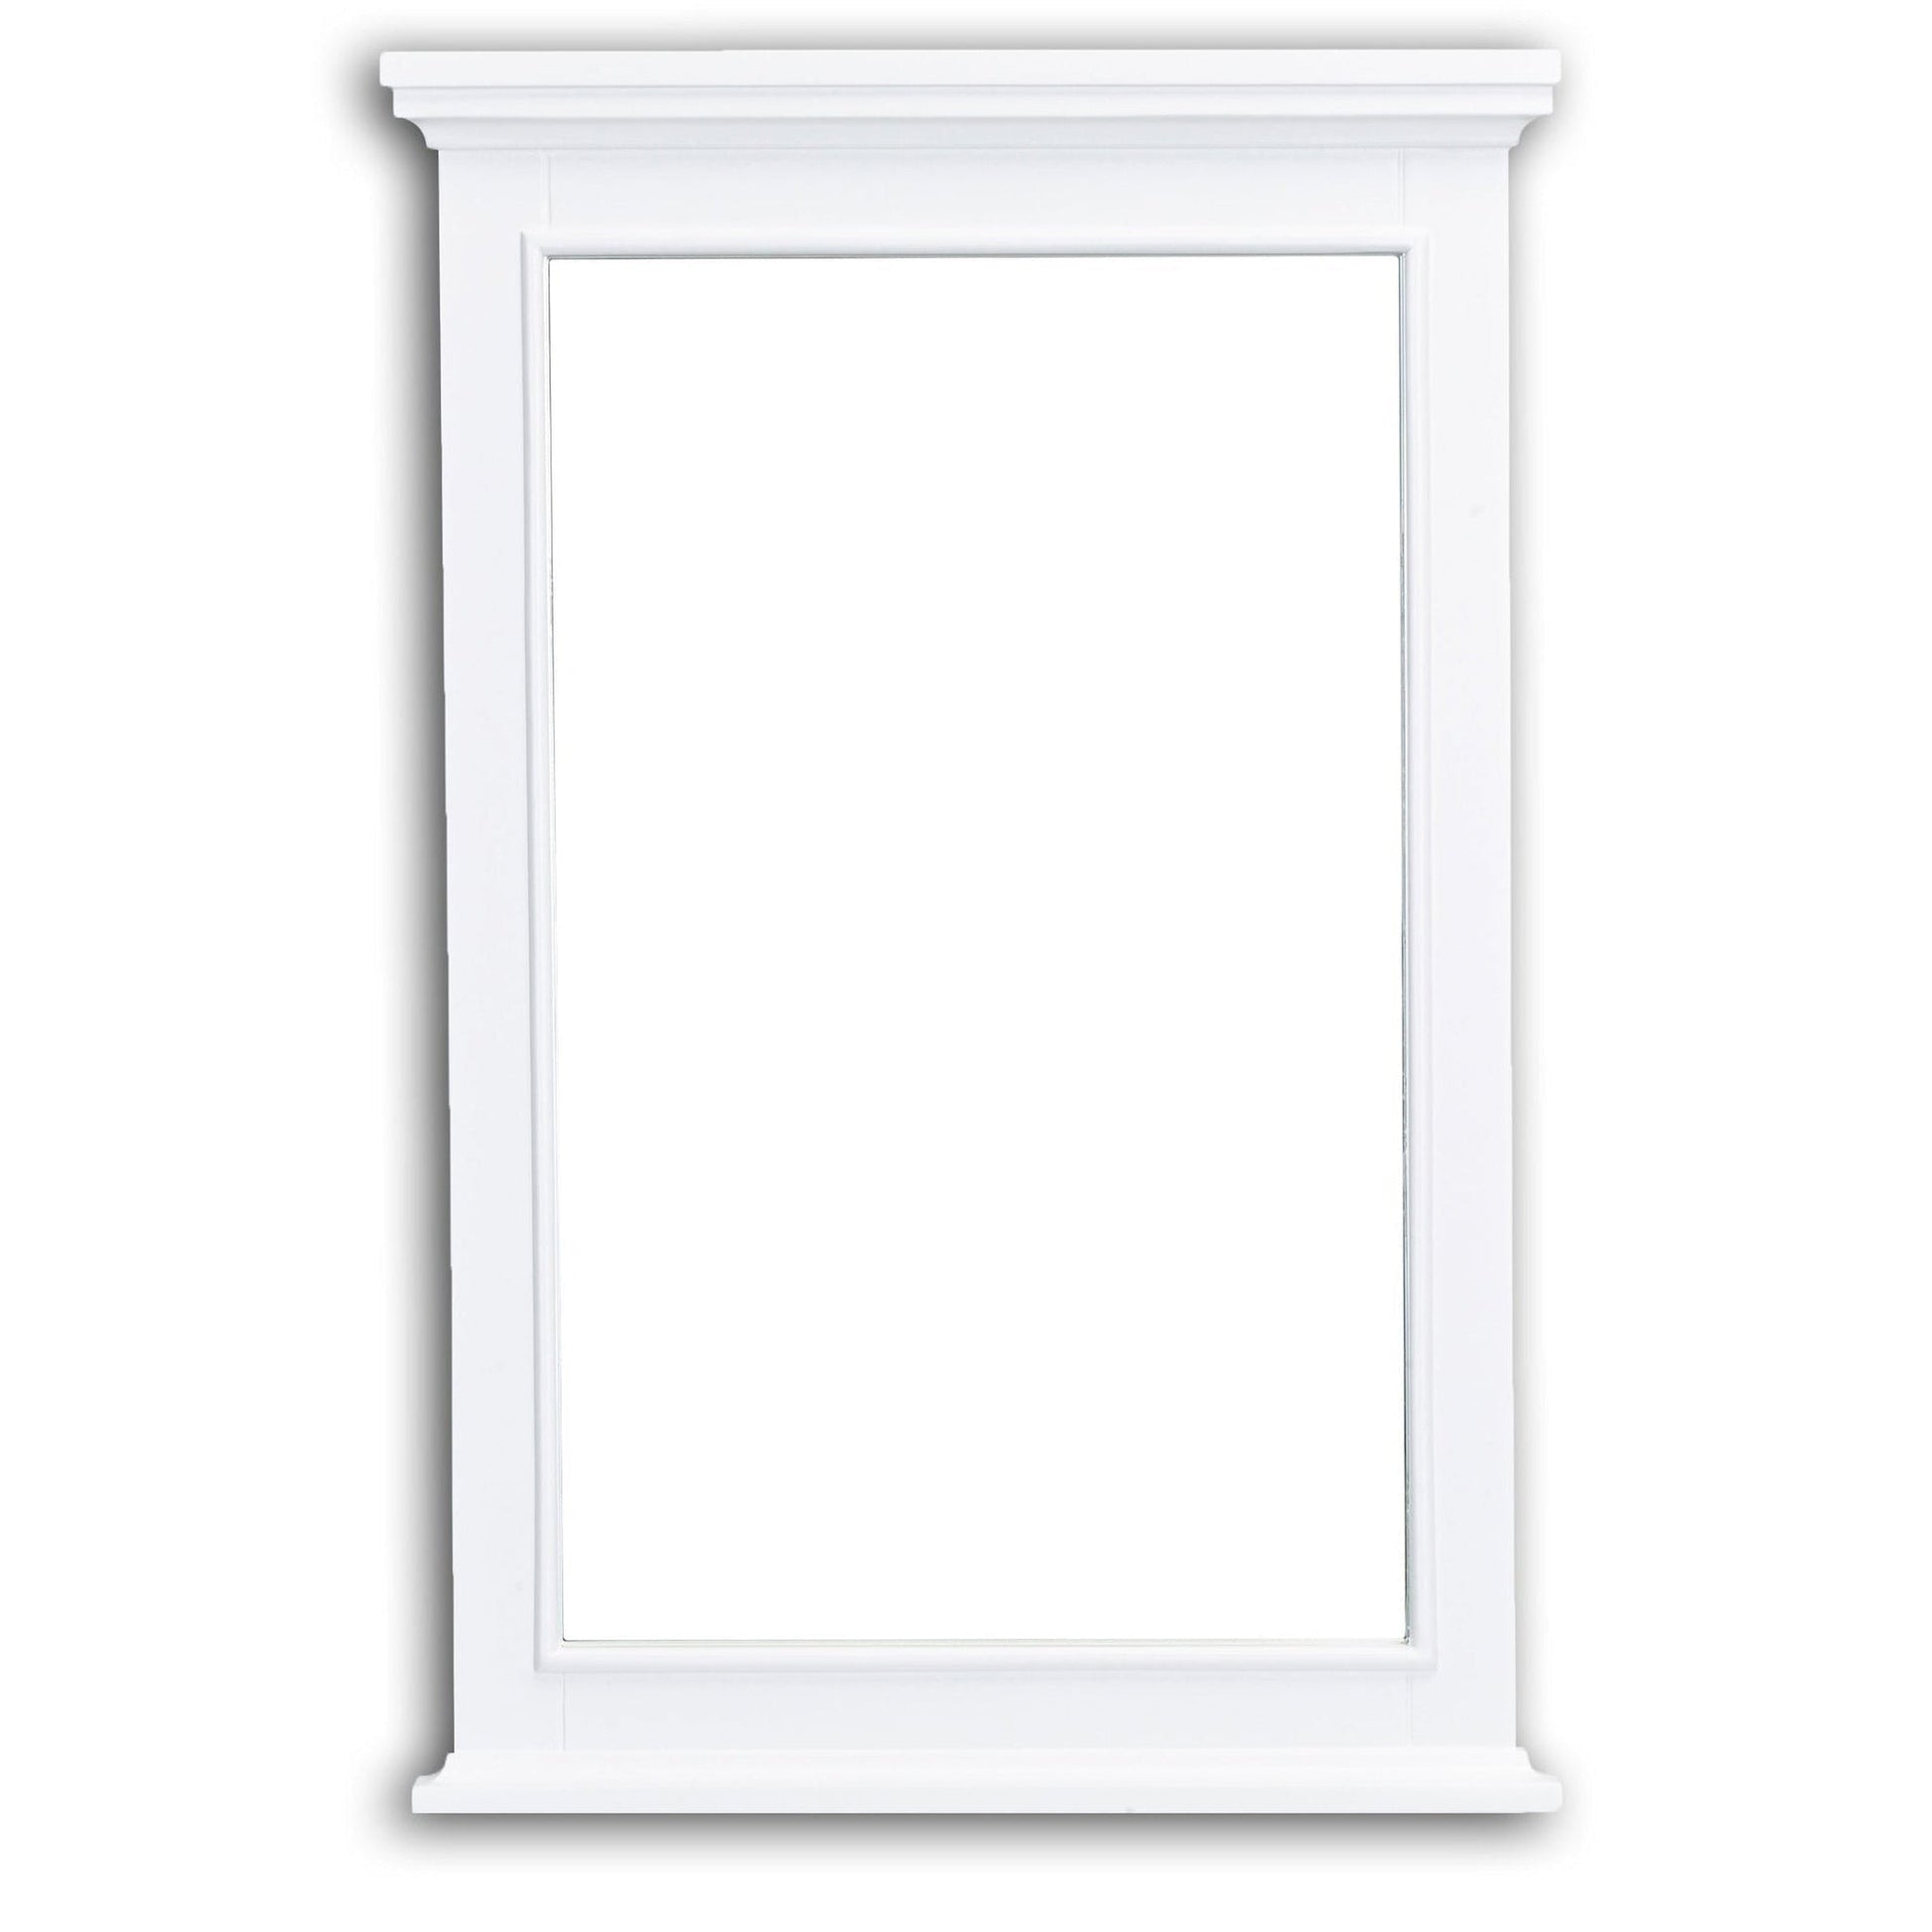 Eviva Elite Stamford 36" x 36" White Full Framed Wall-Mounted Bathroom Mirror